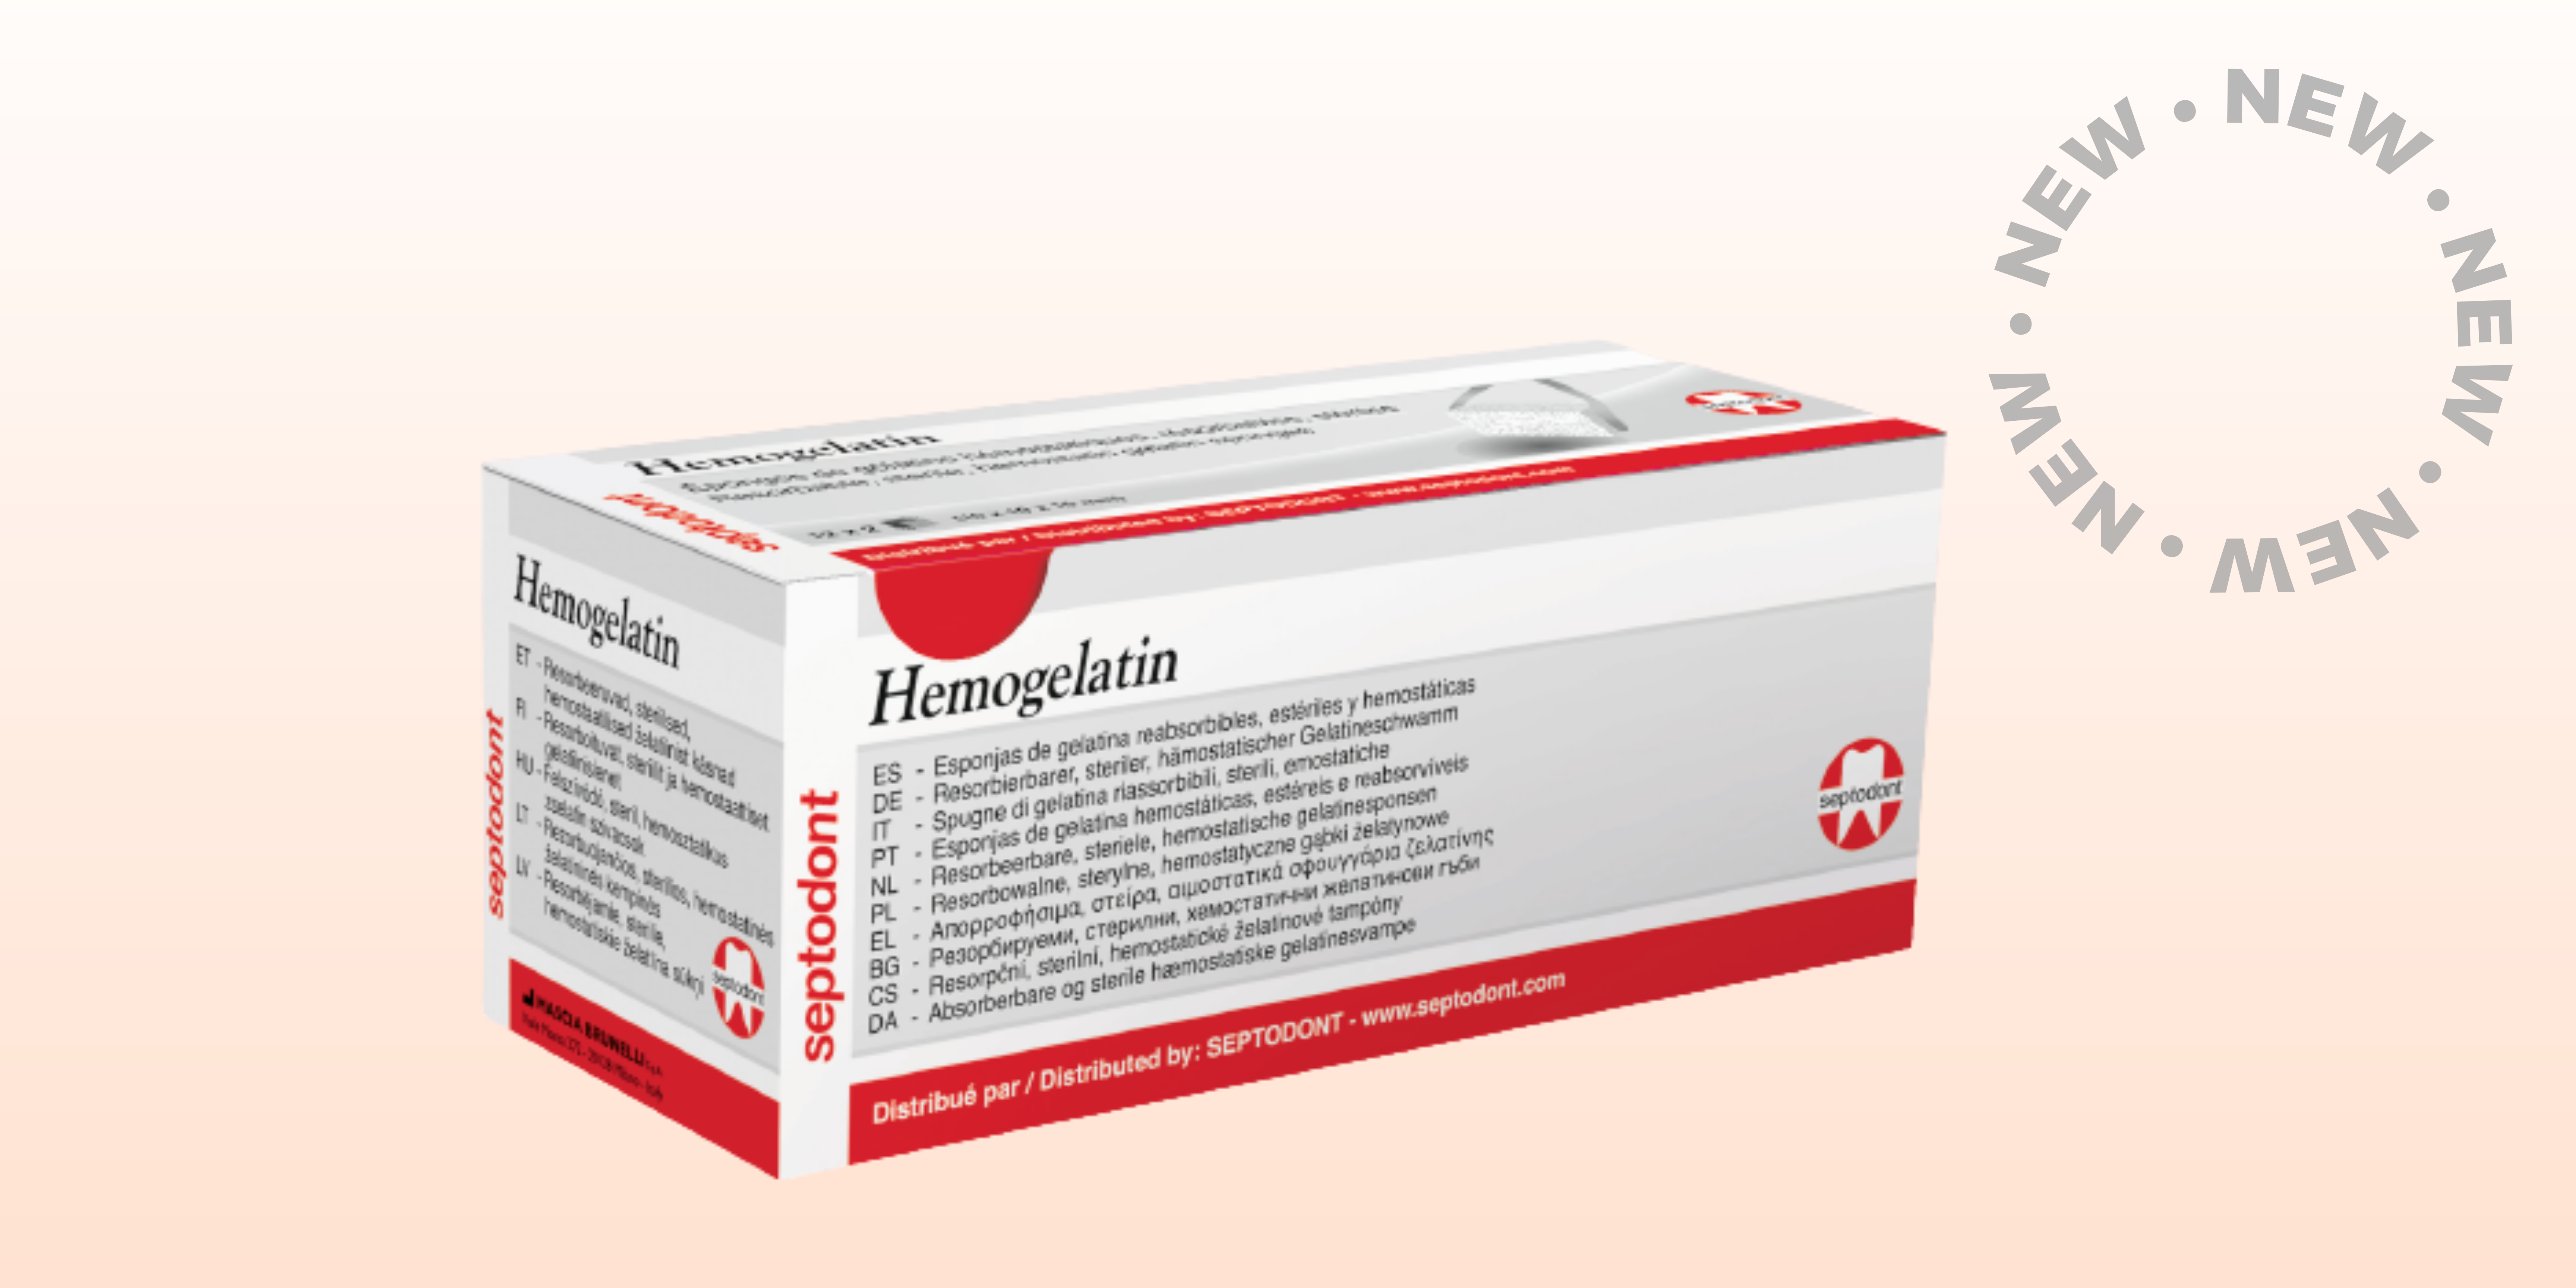 Nouveau produit hémostatique: Hemogelatin